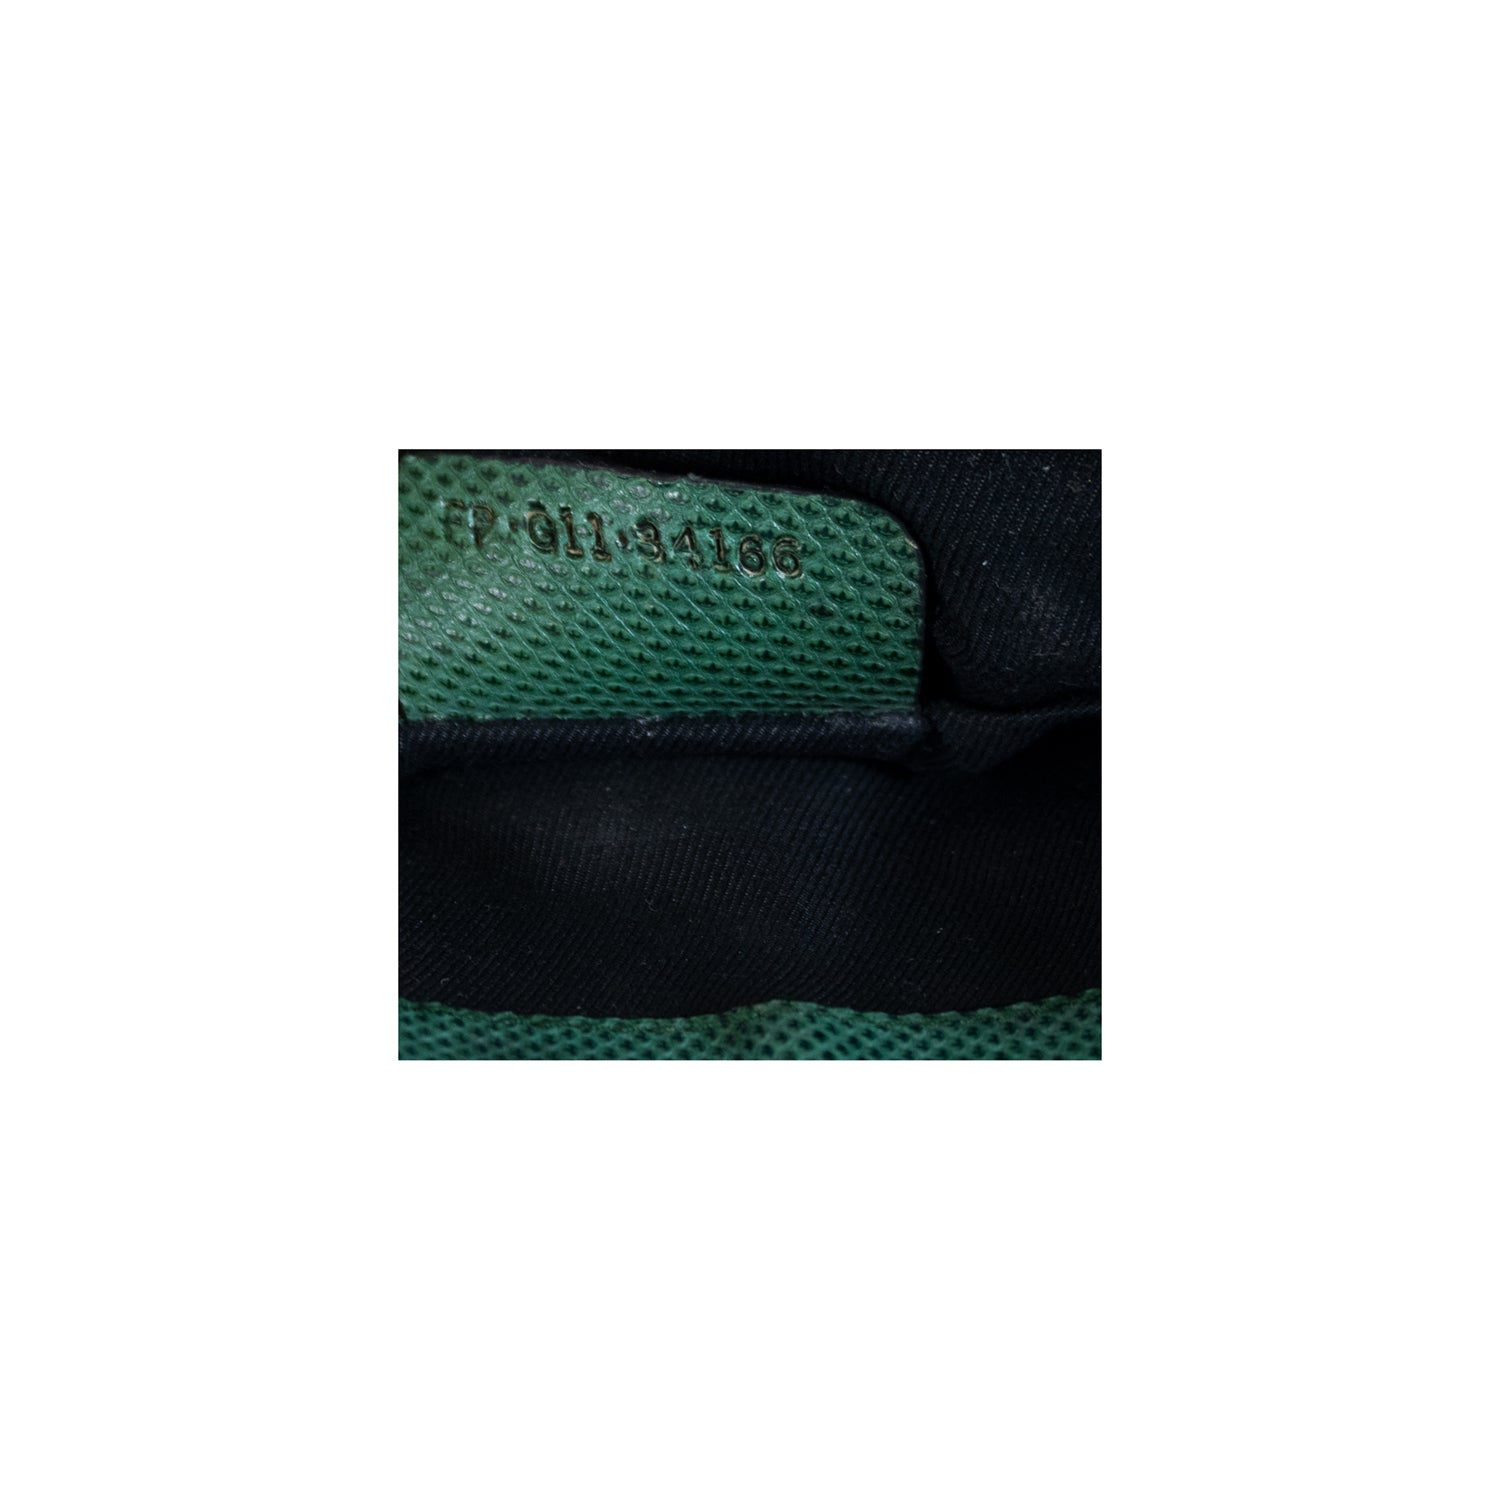 Bvlgari Green Shoulder Bag